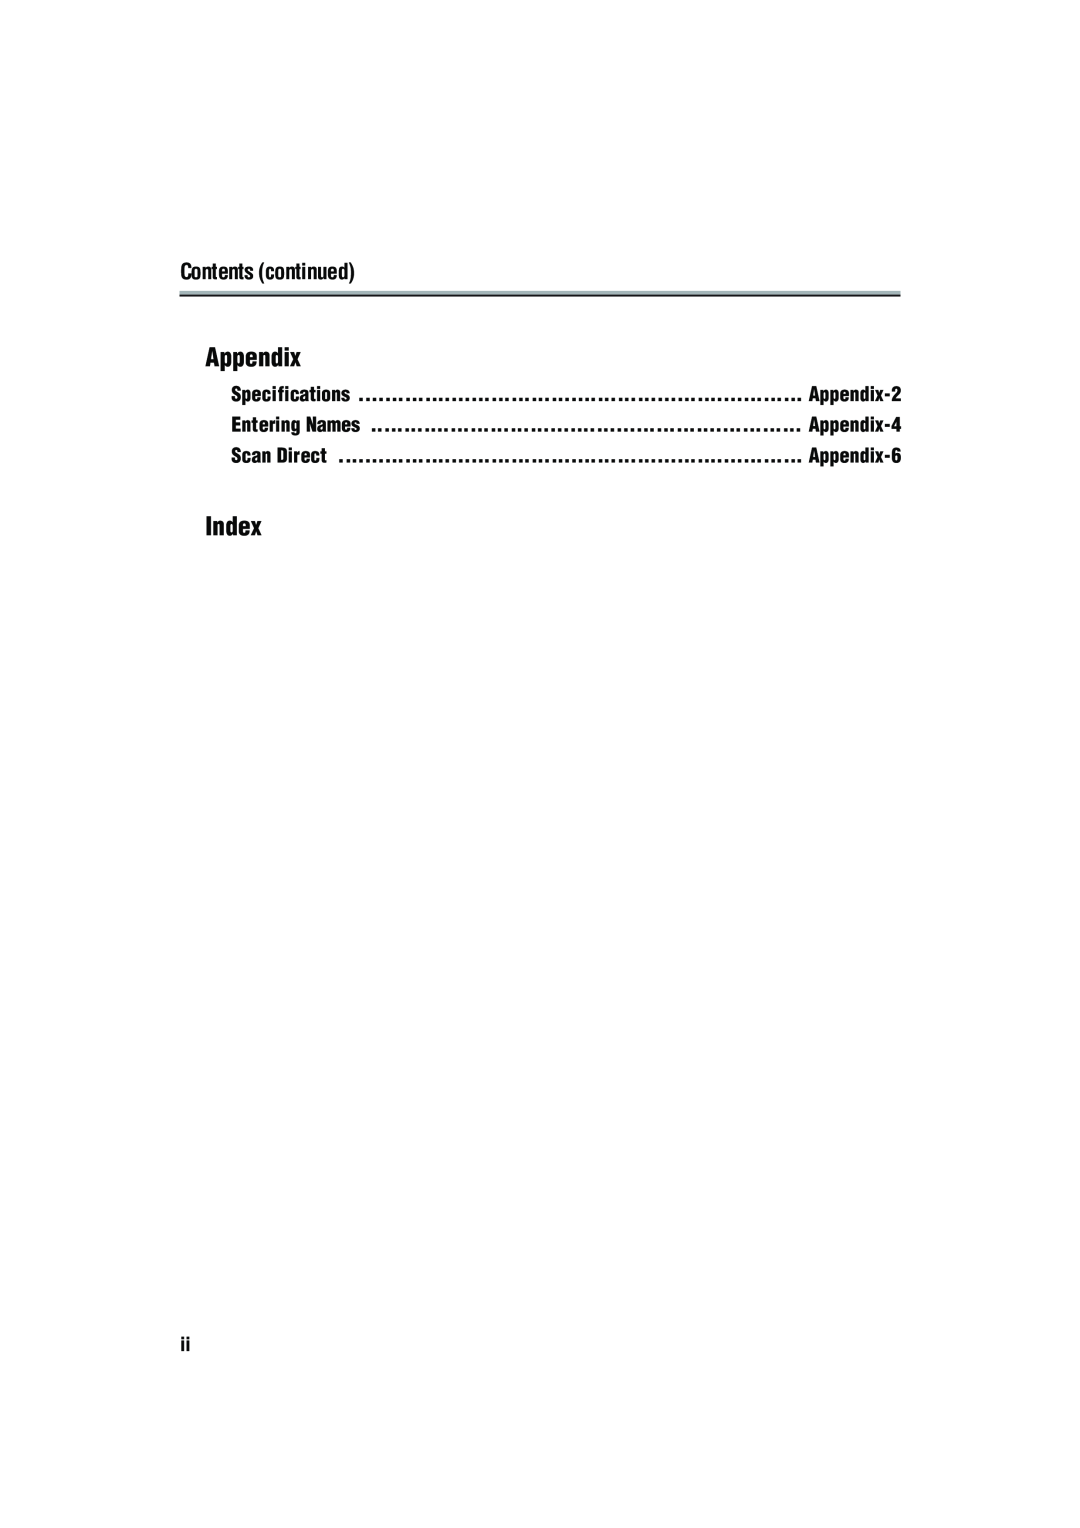 Konica Minolta 7222 manual Index, Contents continued, Appendix-2, Appendix-4, Appendix-6 